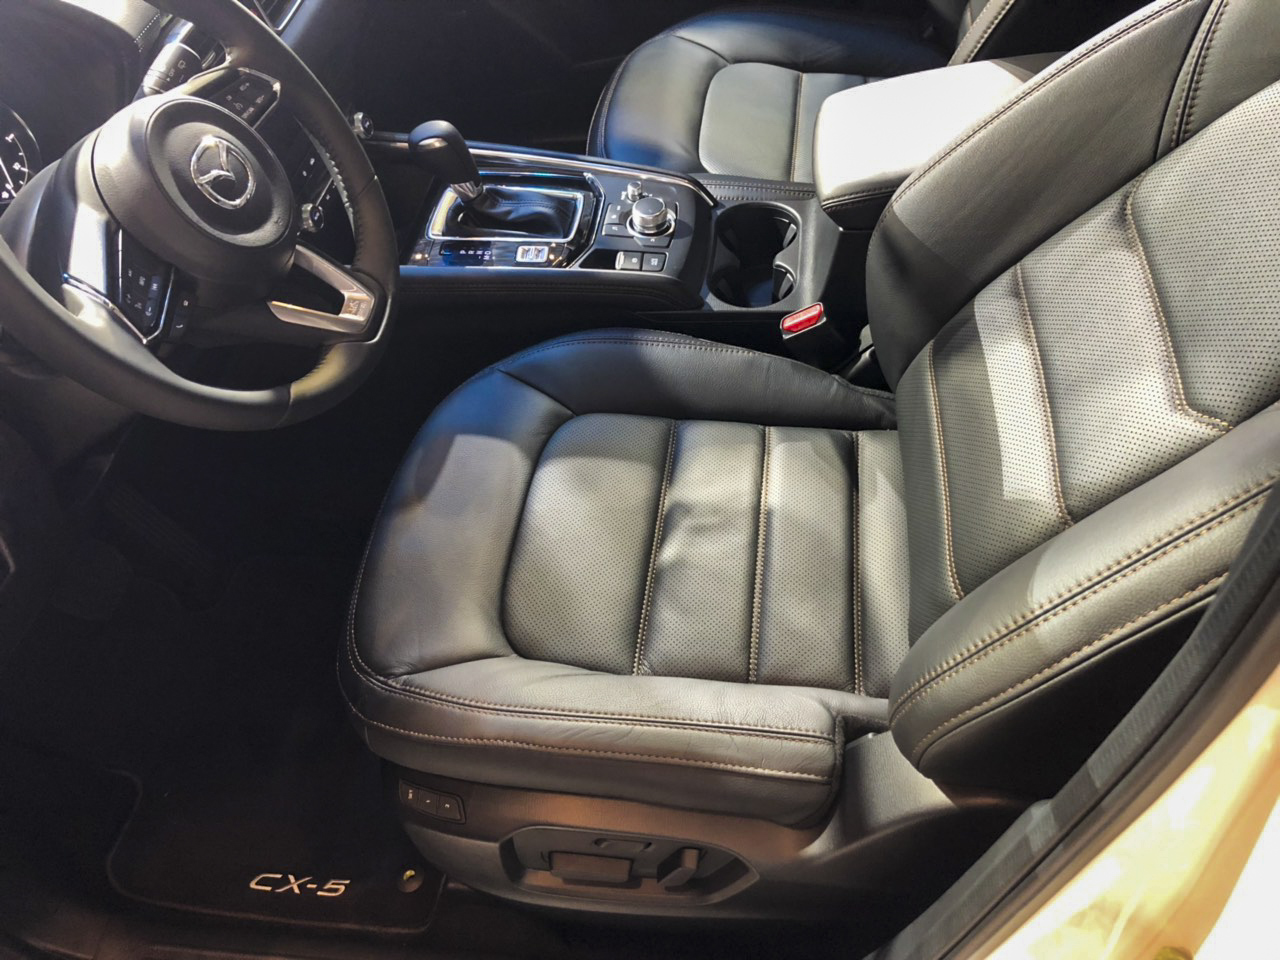 Đánh giá xe Mazda CX-5 2019: Ghế ngồi đều được bọc da với tính năng nhớ ghế và chỉnh điện cho người lái.